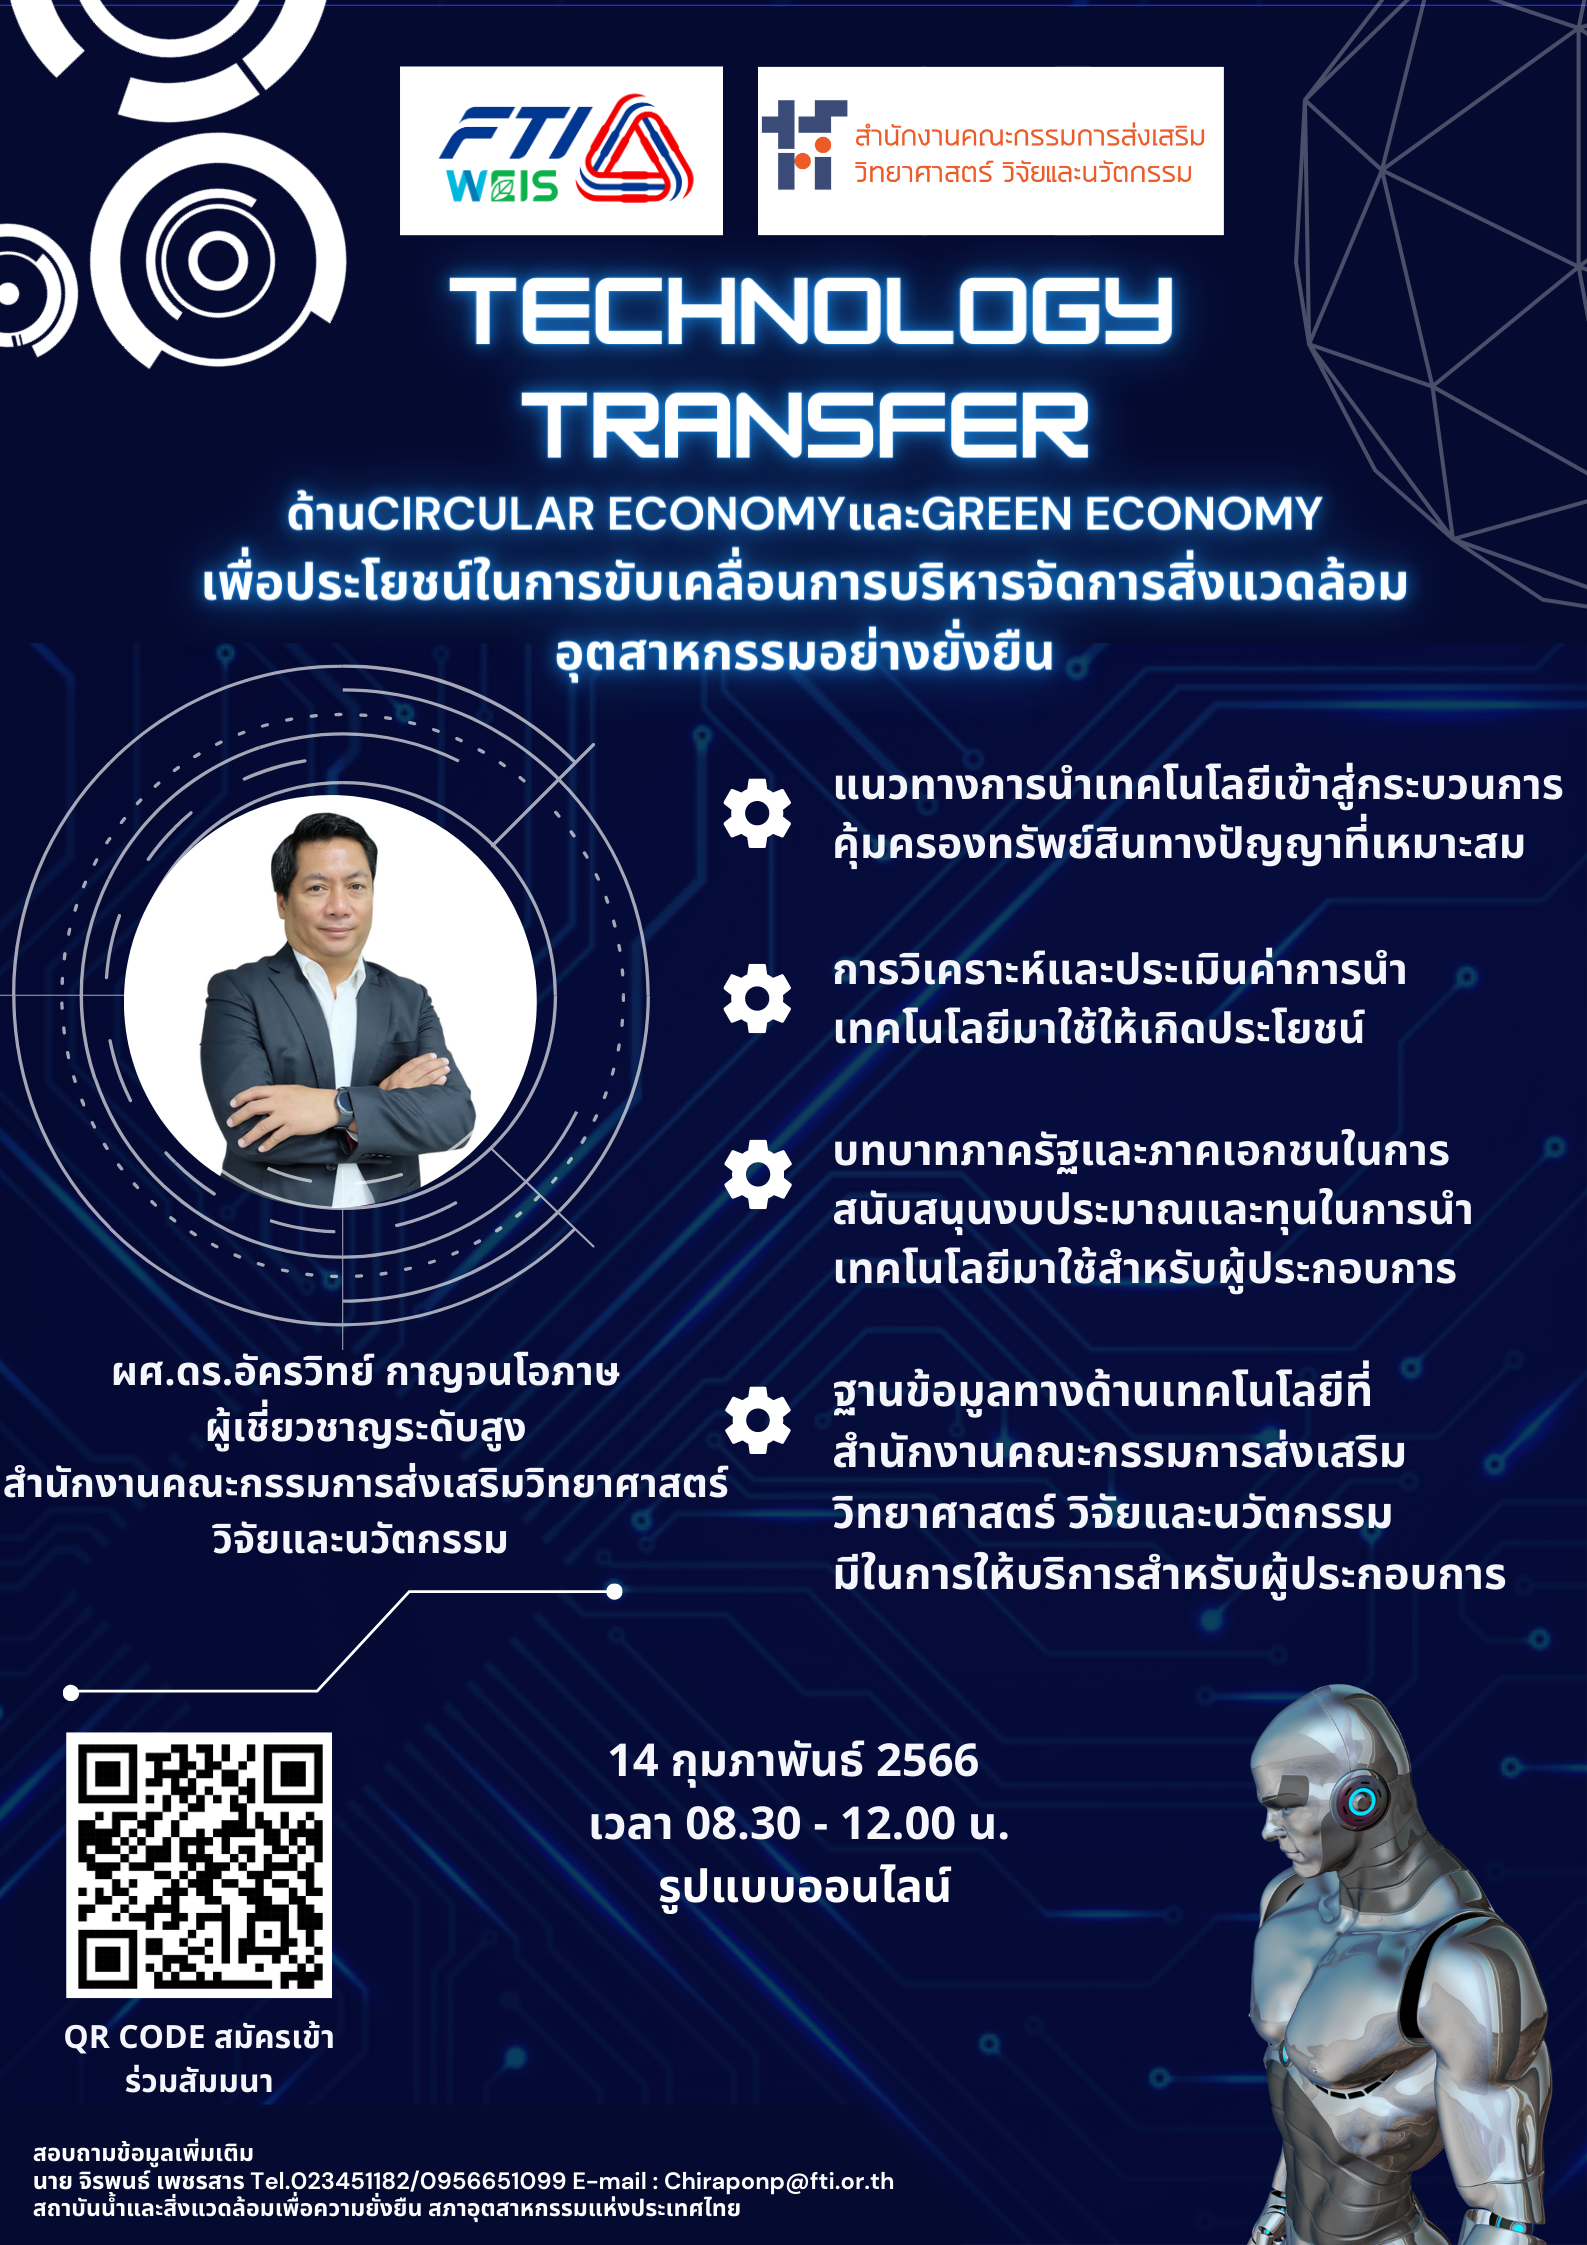 ขอเชิญผู้ที่สนใจเข้าร่วมอบรมในหัวข้อ “การนำ Technology Transfer มาใช้ประโยชน์ในการขับเคลื่อนและพัฒนาภาคอุตสาหกรรมไทย” ในวันที่ 14 กุมภาพันธ์ 2566 เวลา 08.30 -12.00 น. ในรูปแบบ online